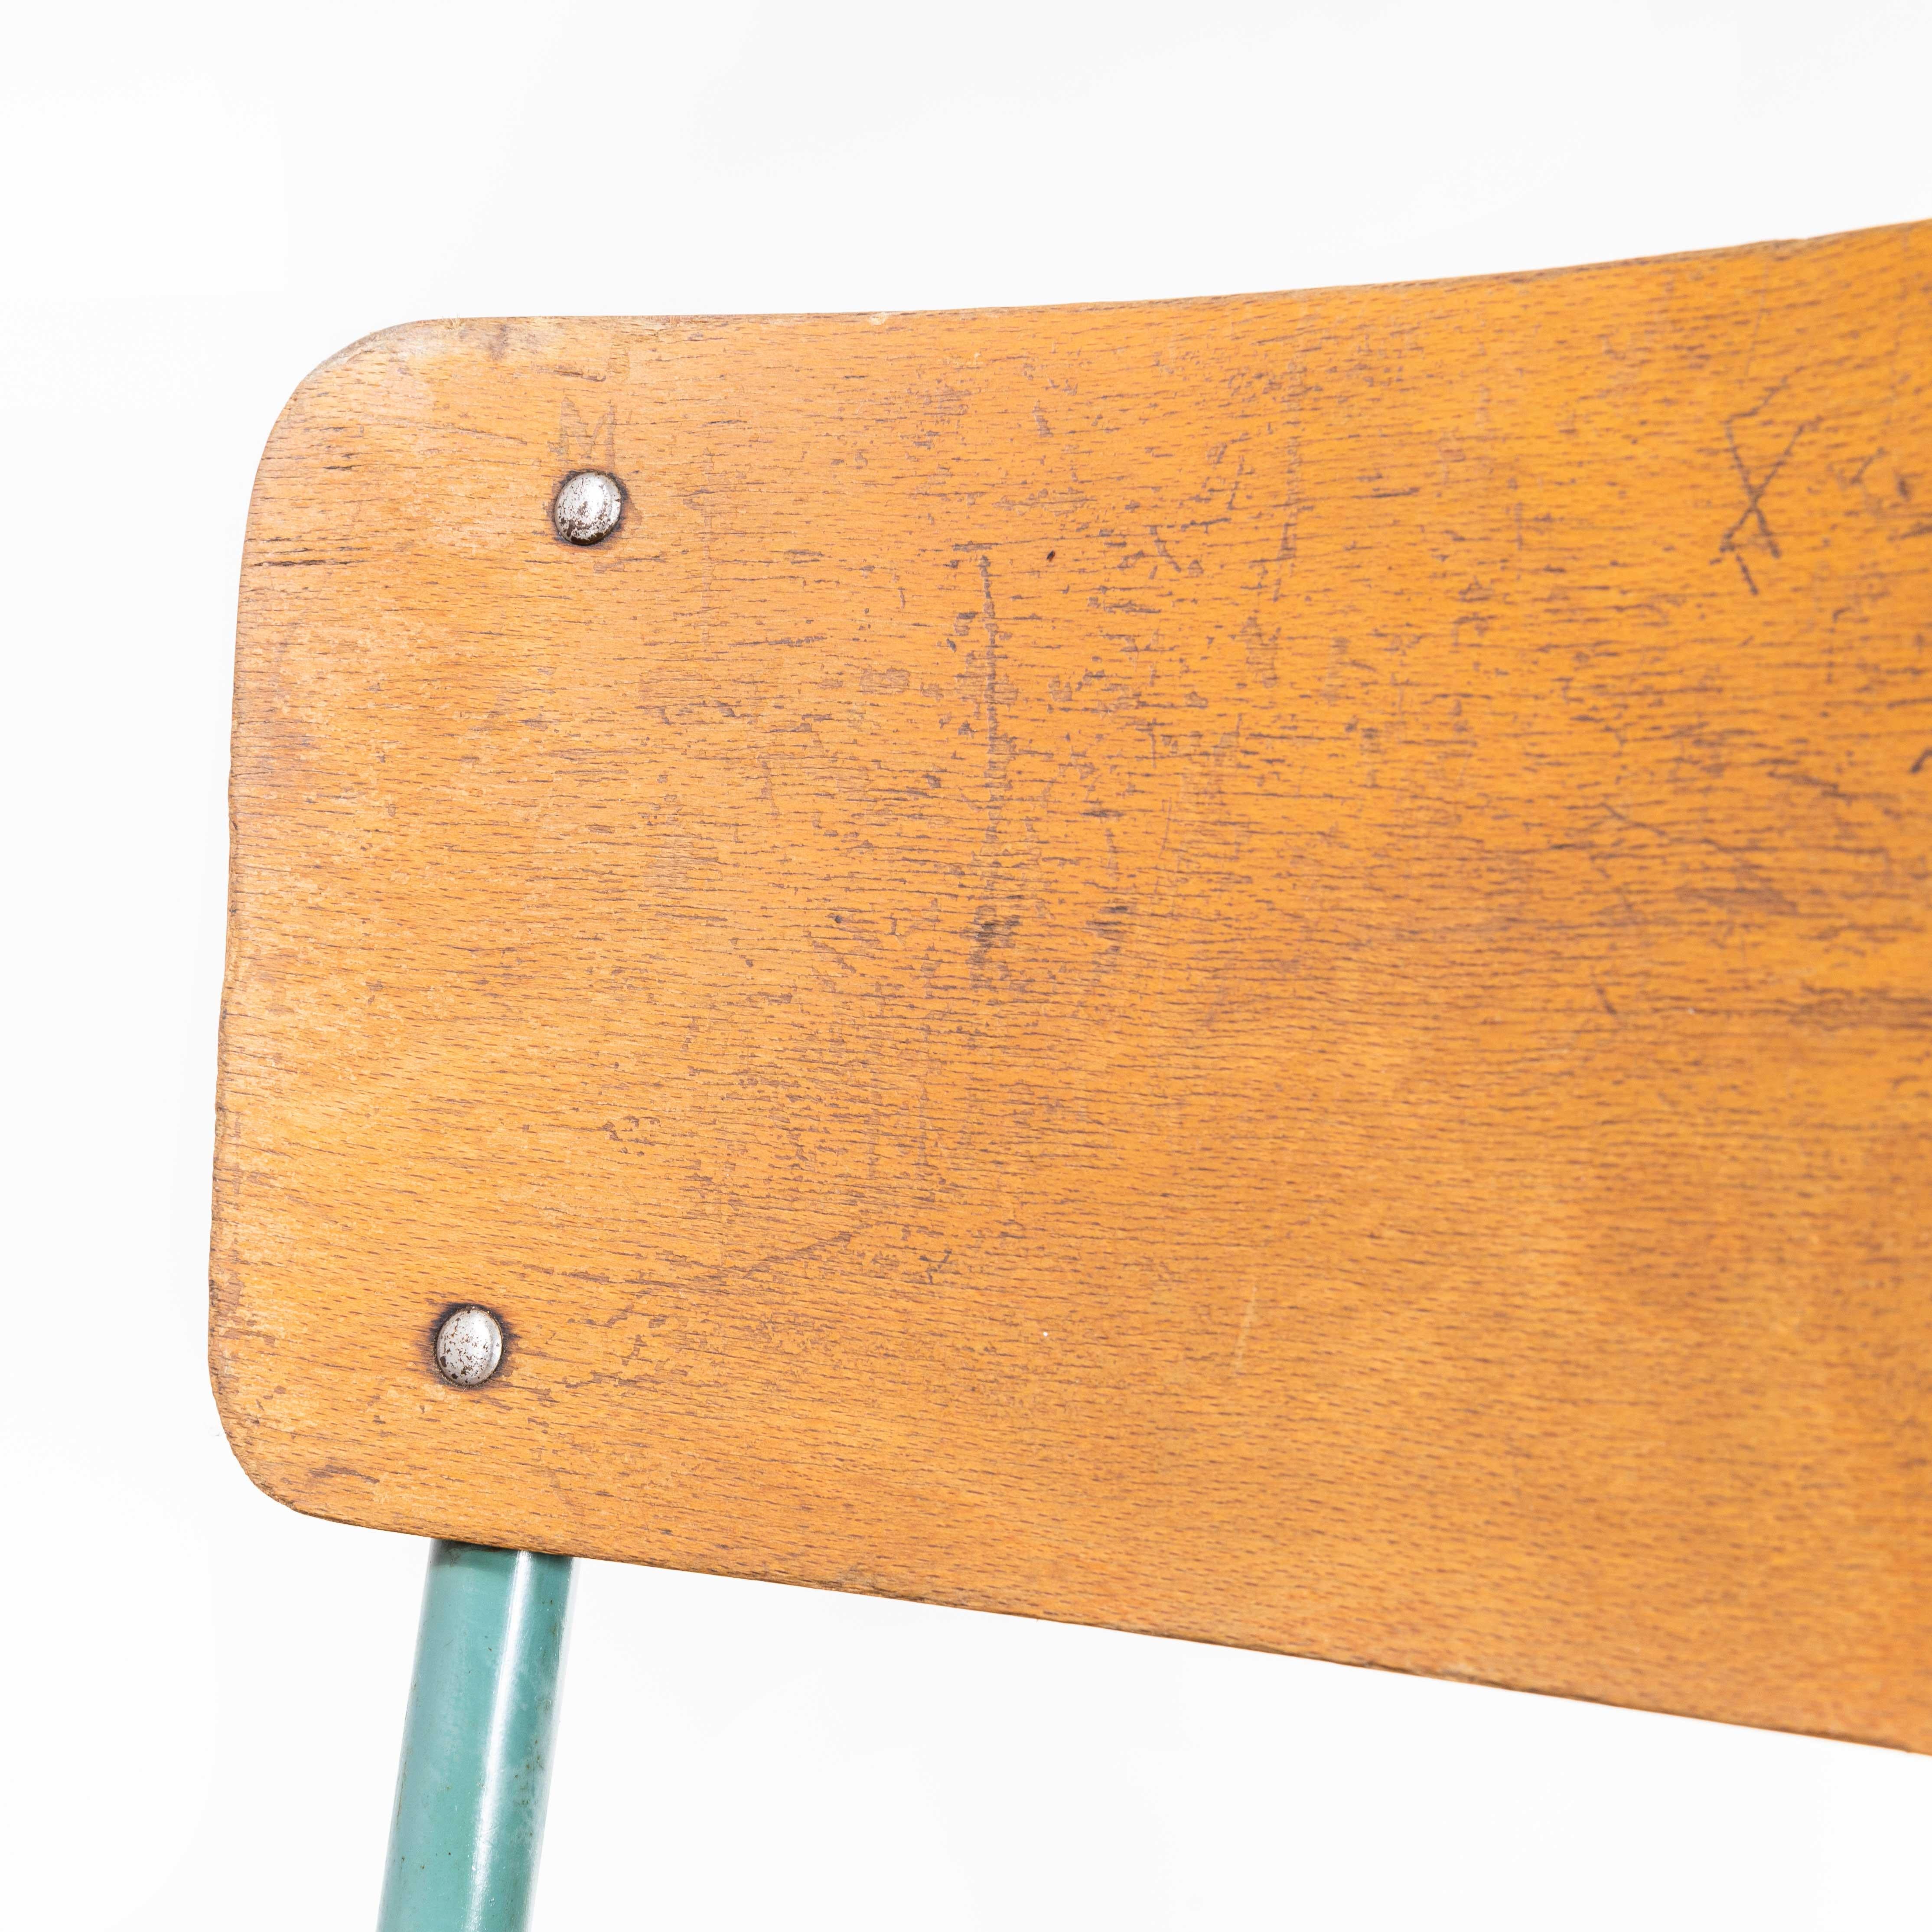 Französische Mullca-Esszimmerstühle aus den 1950er Jahren - Satz mit acht Sitzplätzen
1950s French Mullca Framed Seat Dining Chairs - Set von acht. Einer unserer Lieblingsstühle. 1947 gründeten Robert Muller und Gaston Cavaillon das Unternehmen,